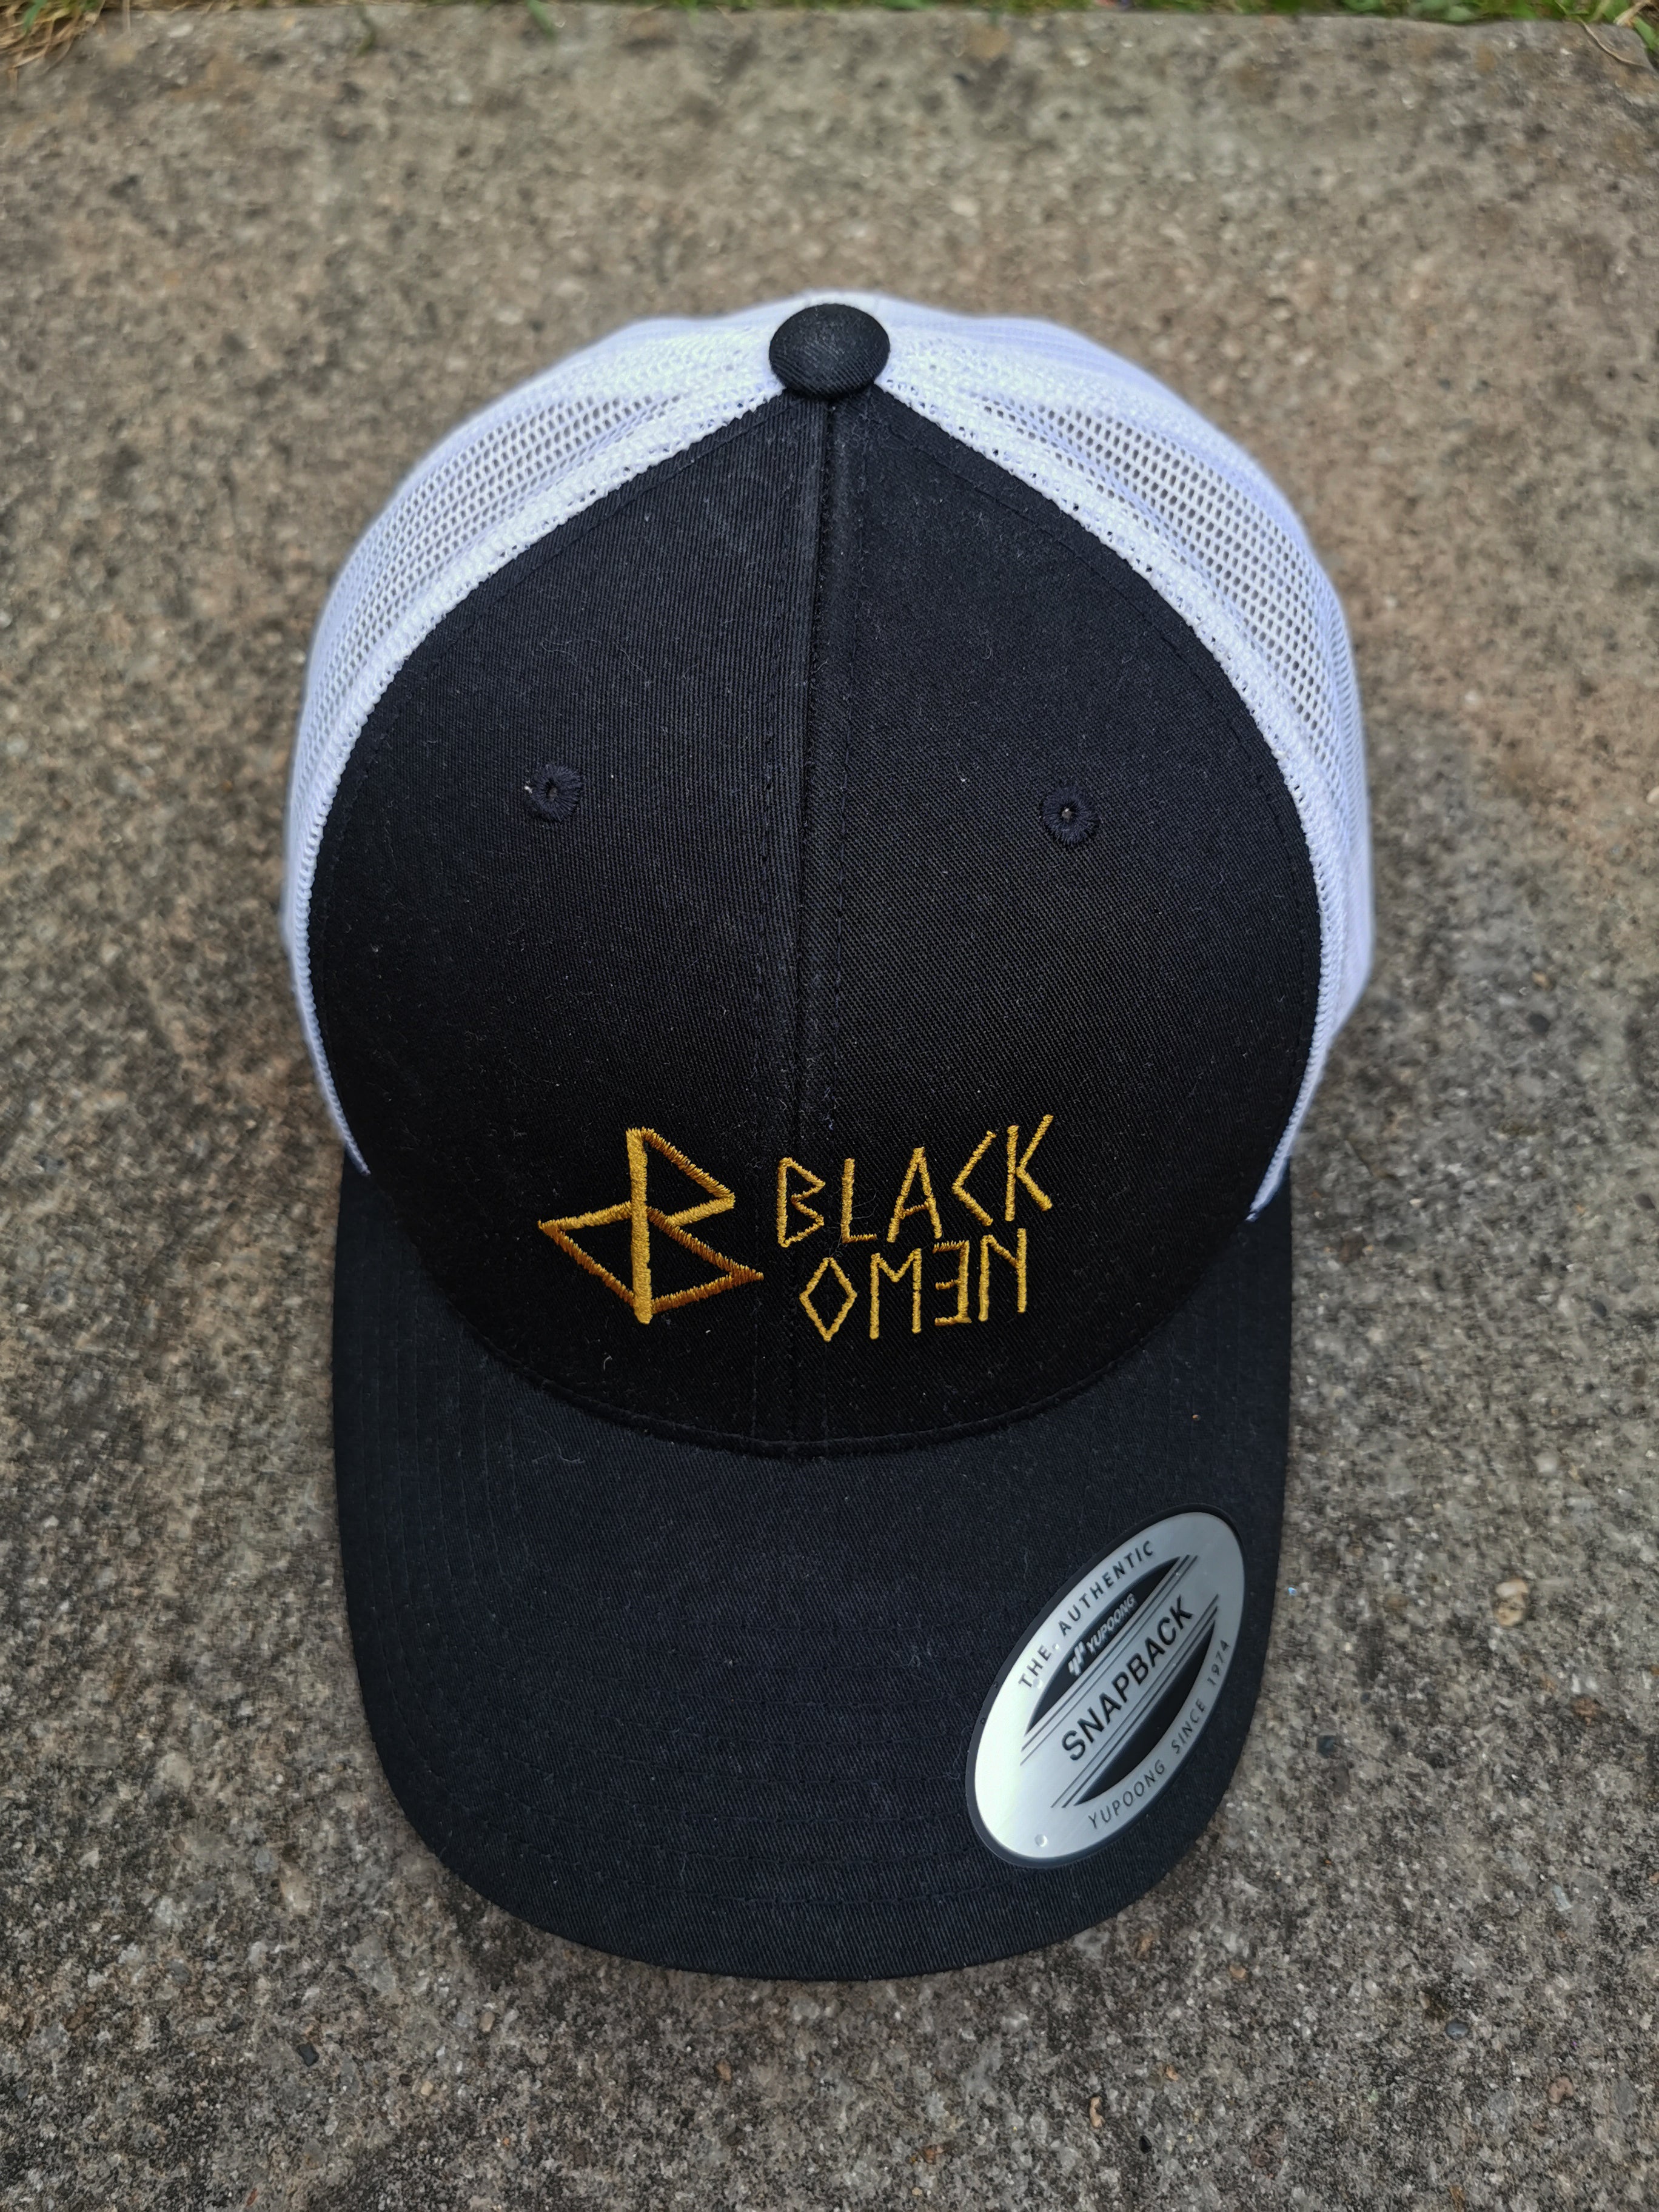 BLACK-OMƎN TRUCKER HAT / BLACK / WHITE / OLD GOLD - BLACK-OMƎN